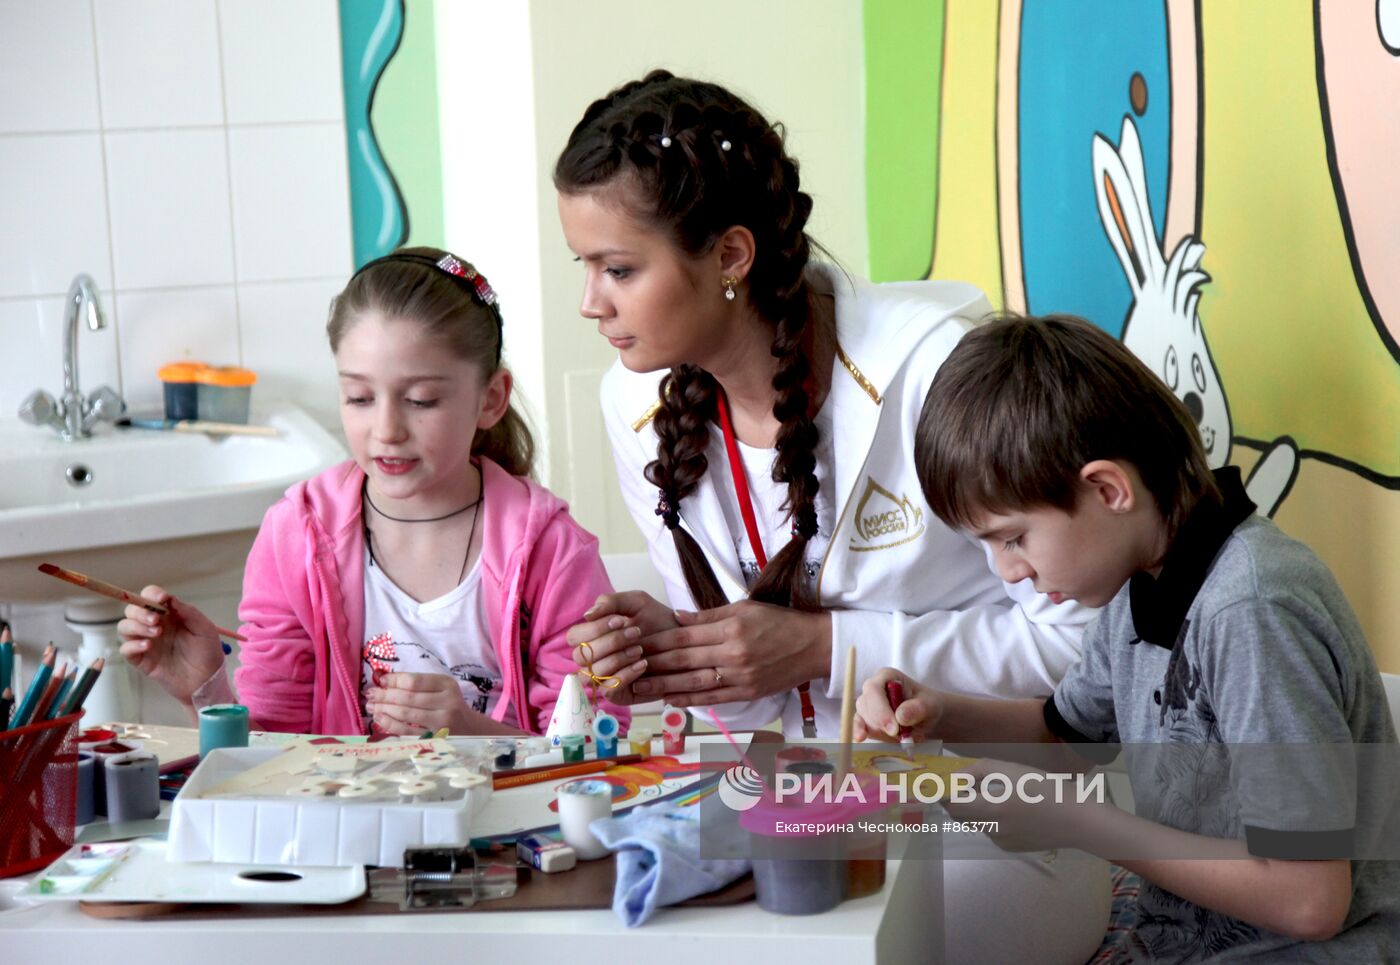 Участницы конкурса "Мисс Россия" посетили центр им. А.Н.Бакулева